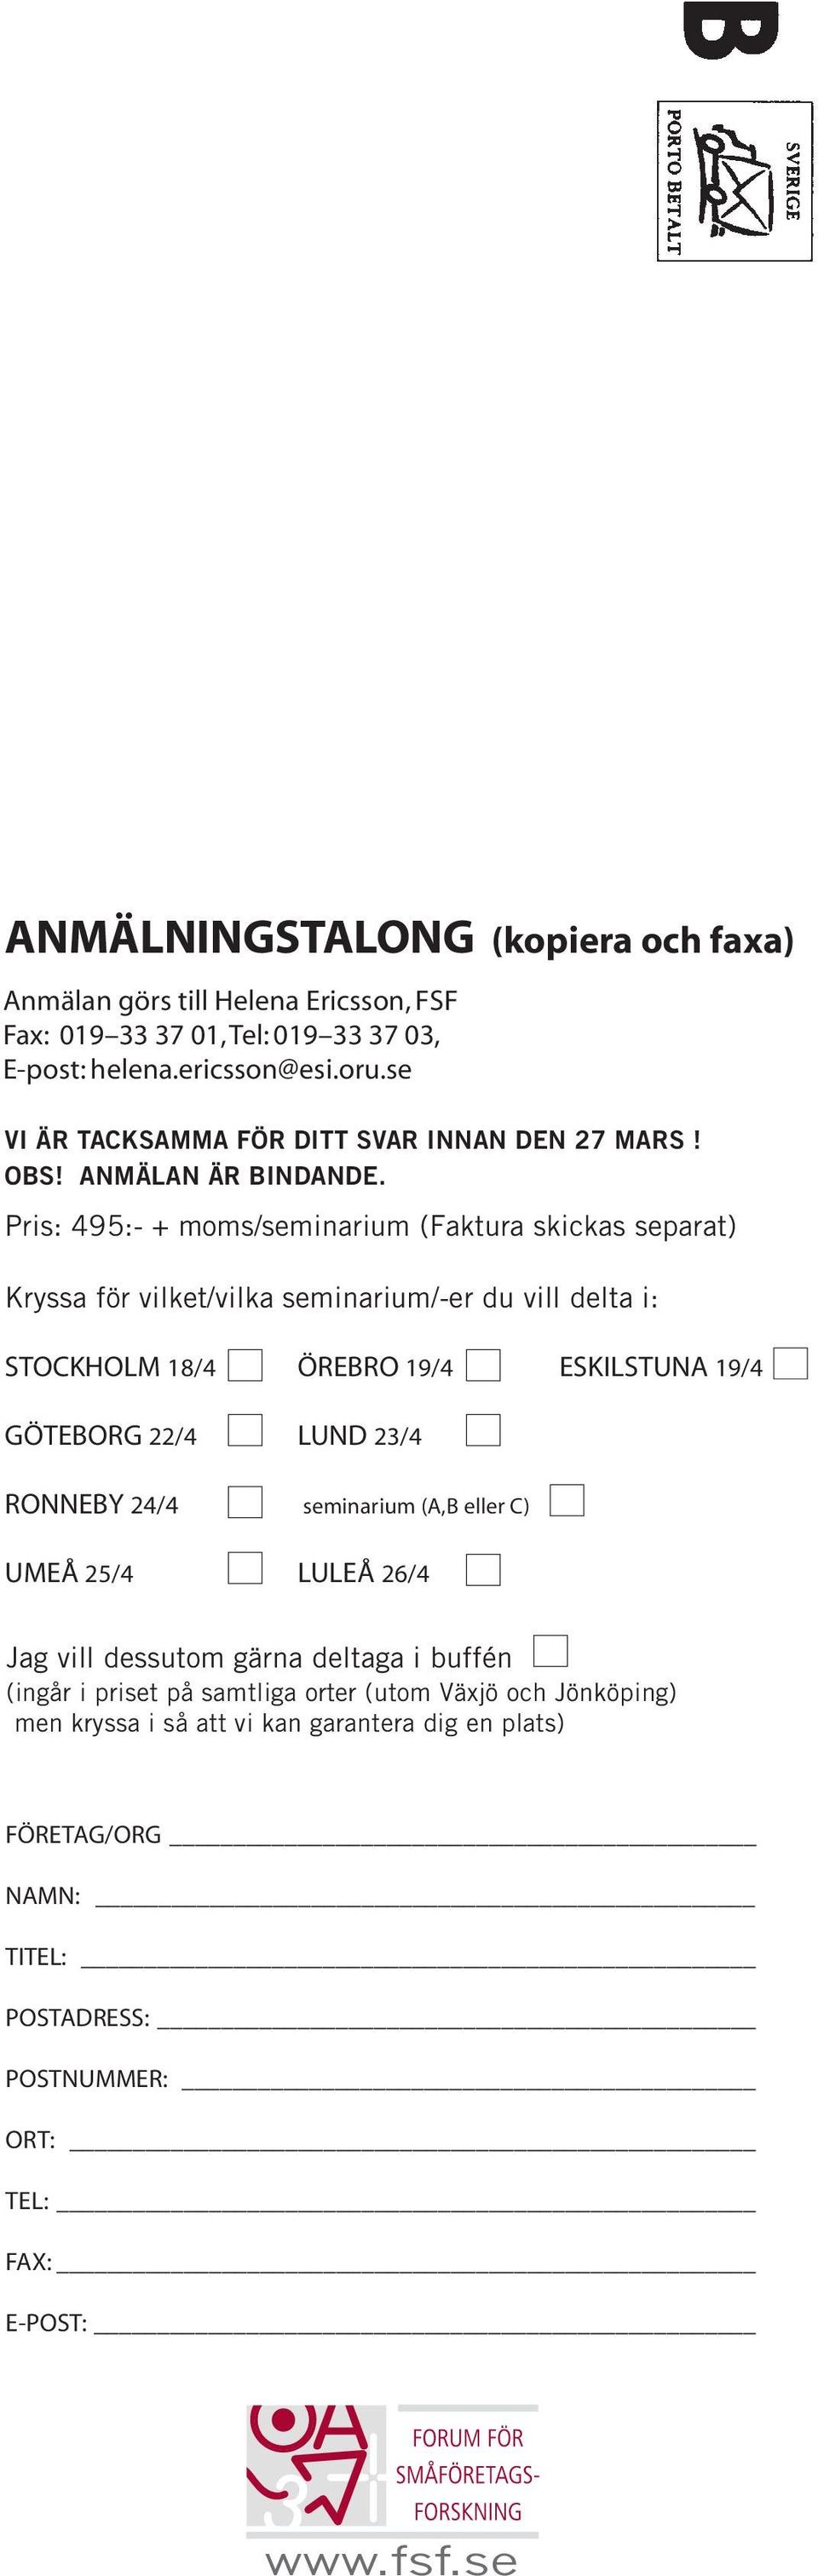 Pris: 495:- + moms/seminarium (Faktura skickas separat) Kryssa för vilket/vilka seminarium/-er du vill delta i: STOCKHOLM 18/4 ÖREBRO 19/4 ESKILSTUNA 19/4 GÖTEBORG 22/4 LUND